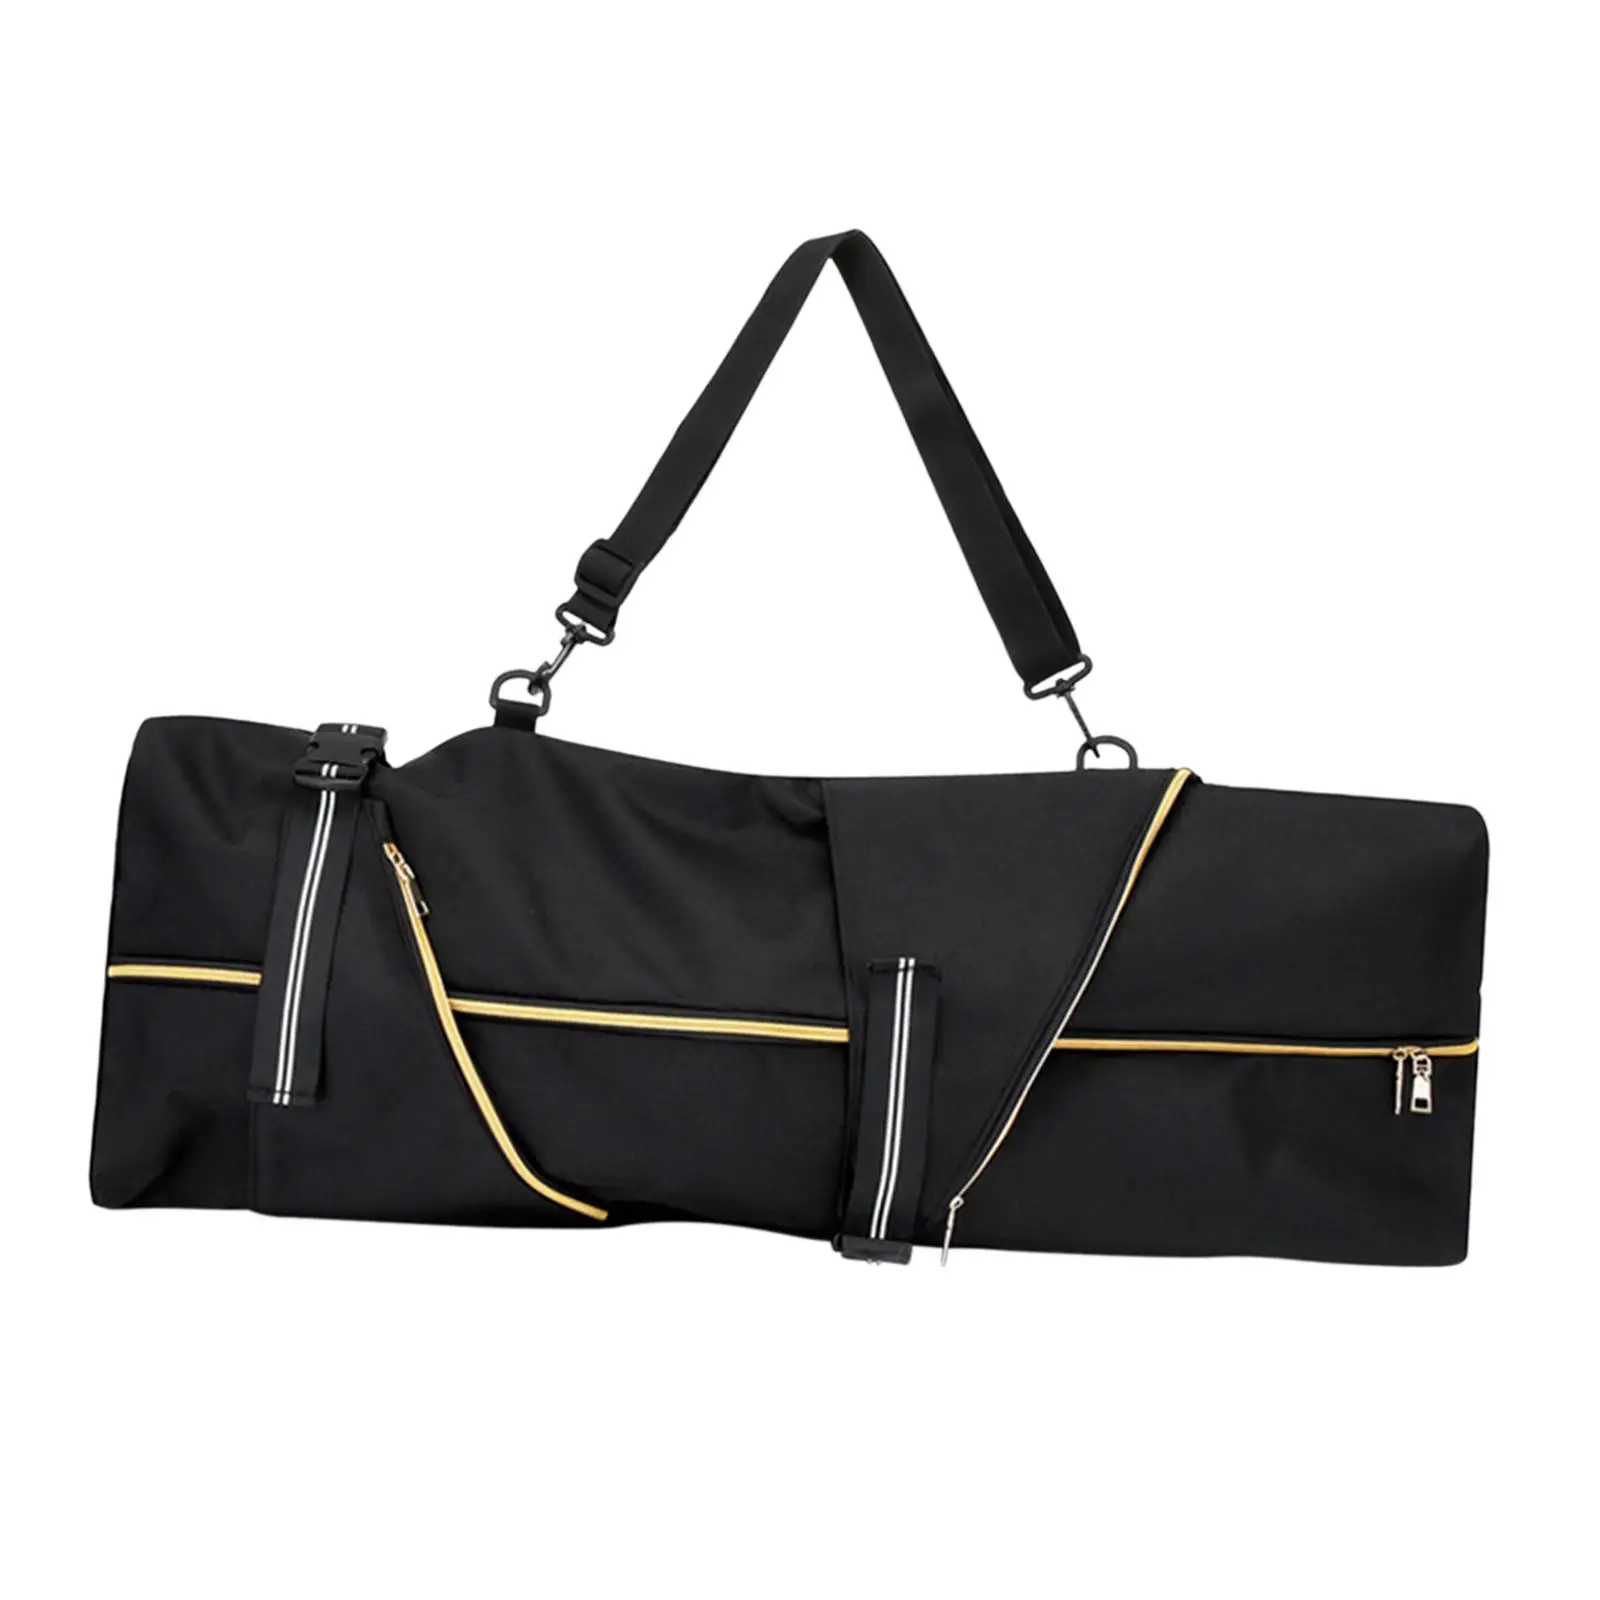 Skateboard Backpack Adjustable Straps Travel Accessories Deck Water Resistant Skateboard Carry Bag Longboard Carrier Bag for Men